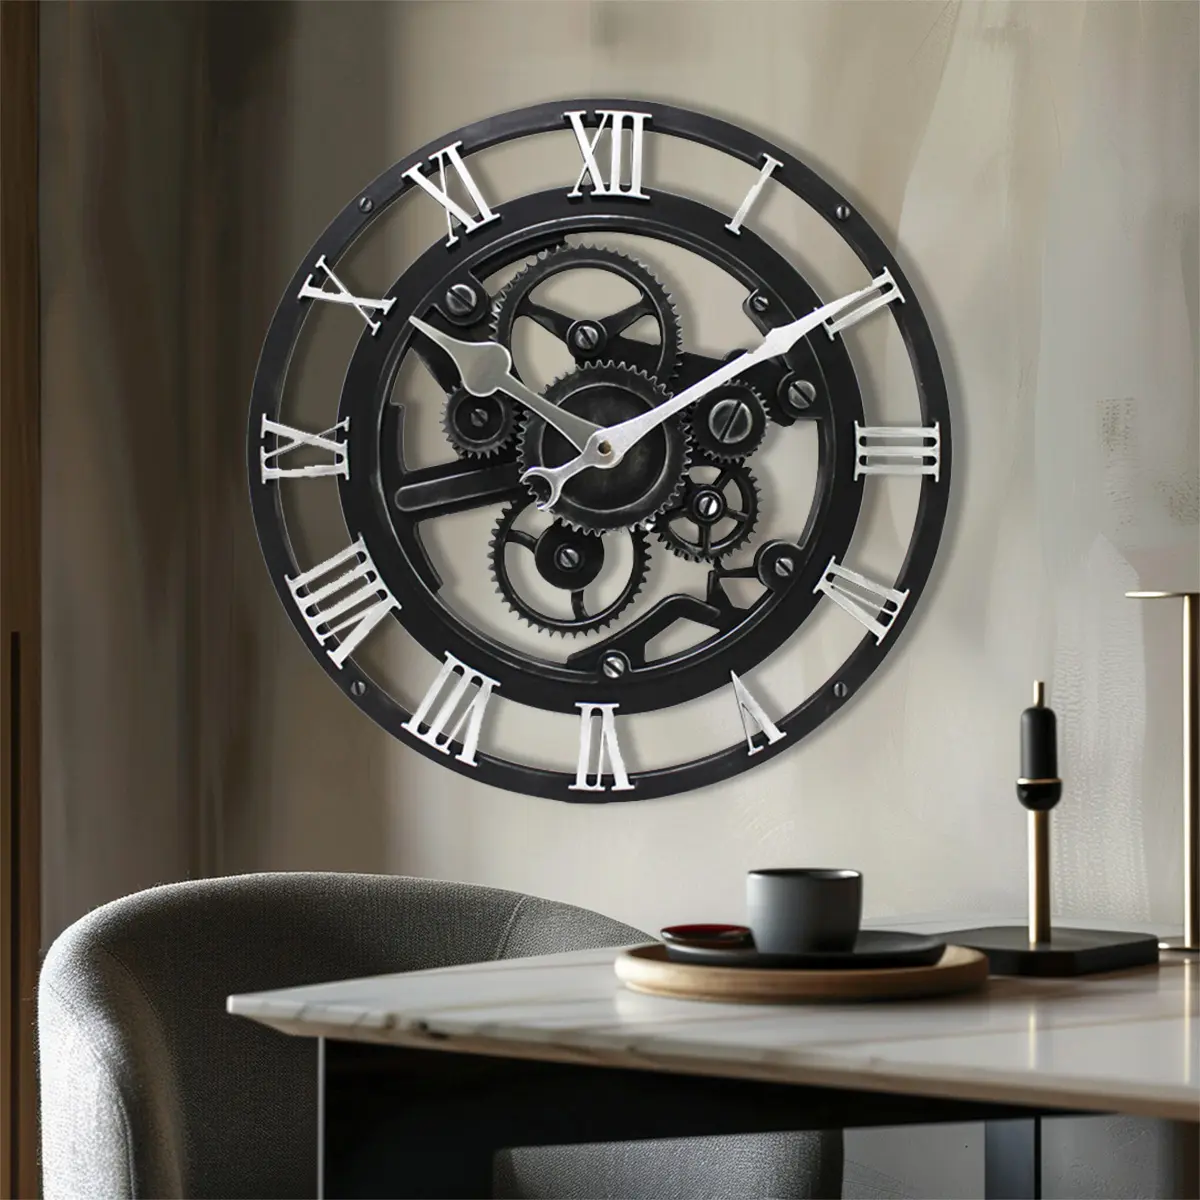 14 "빈티지 펑크 스타일 산업용 기어 시계 로마 숫자 예술 장식 벽 시계